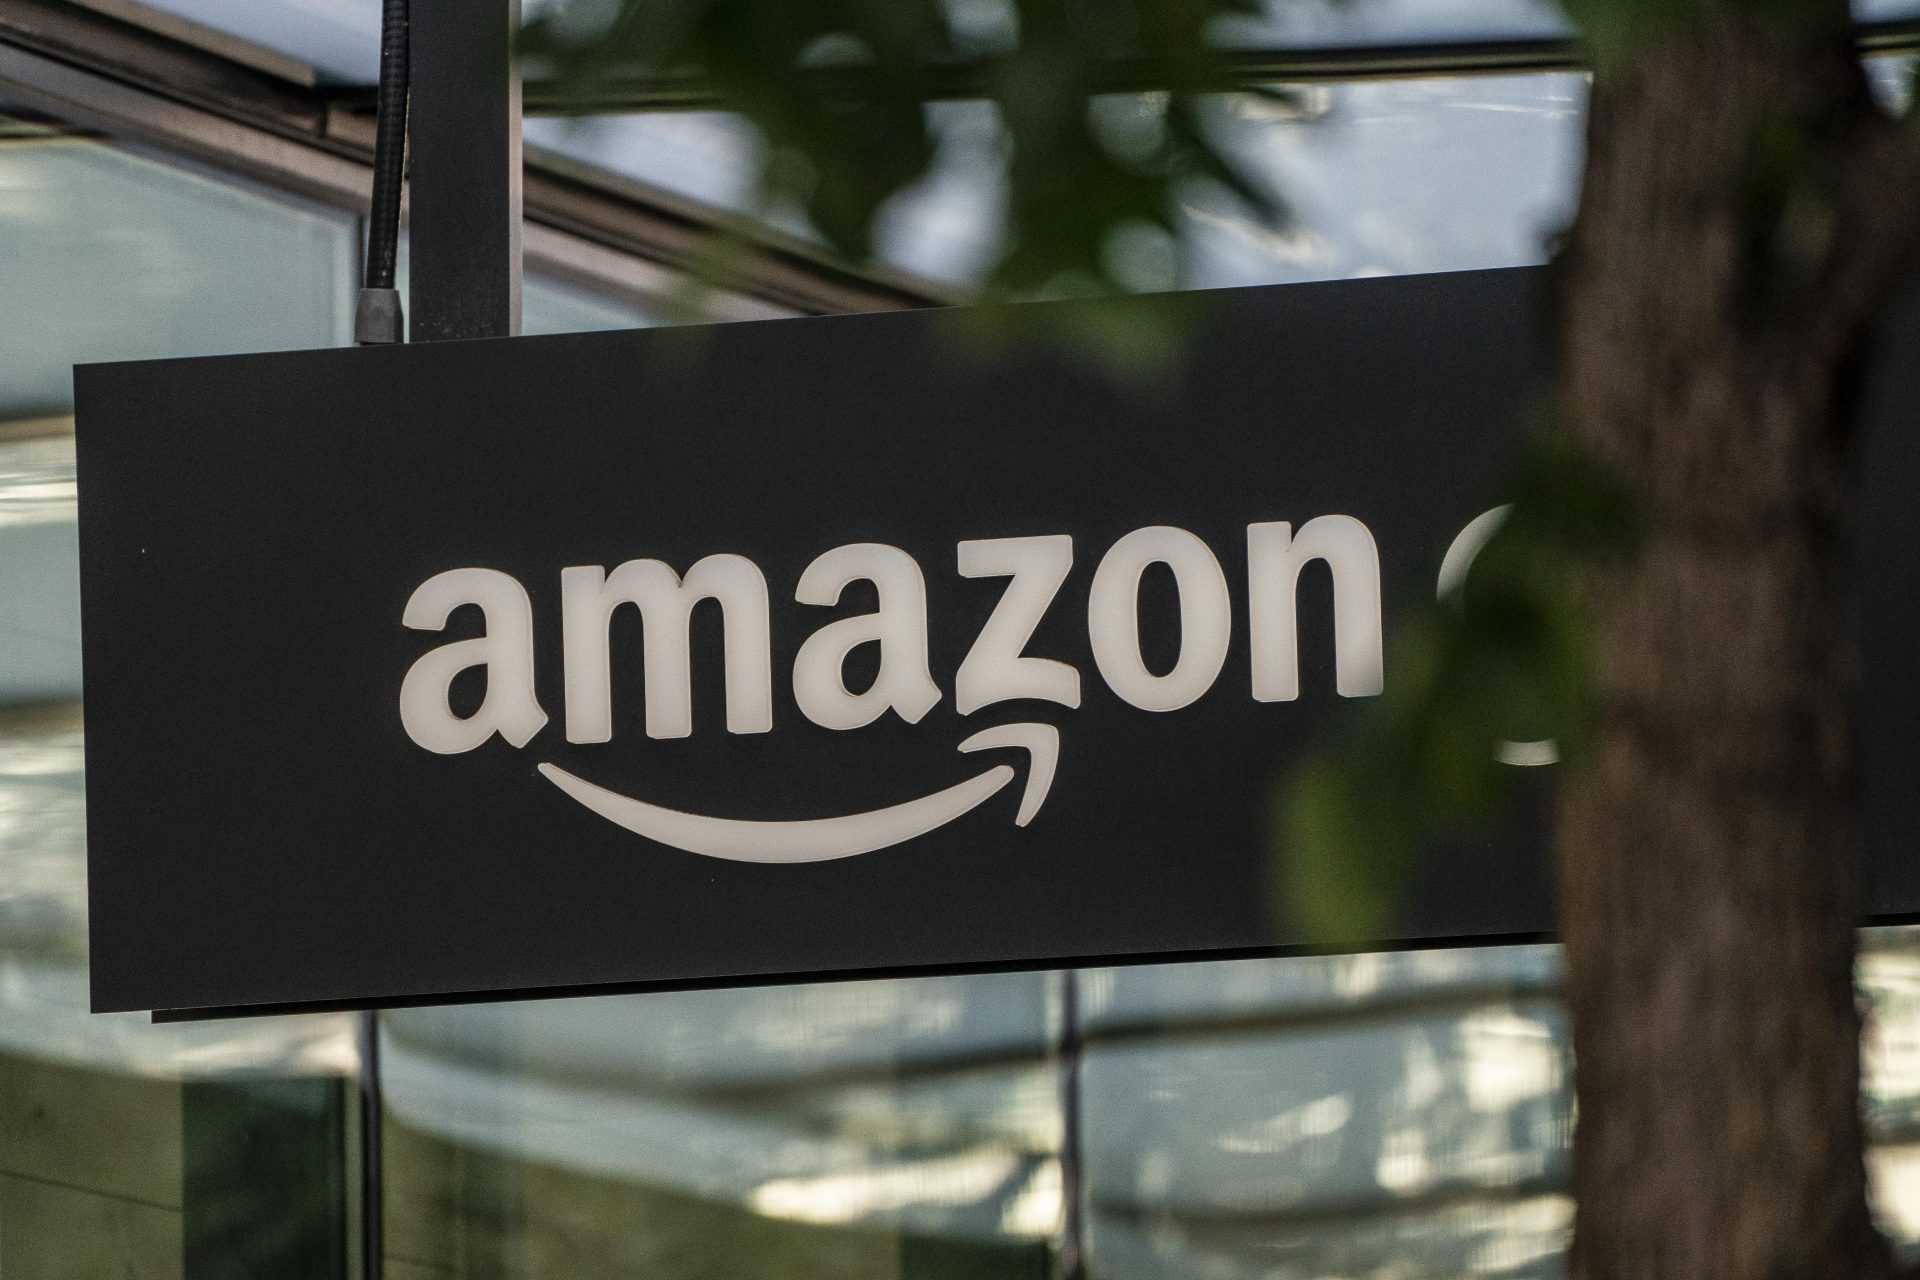 Amazon accused of illegally raising prices in antitrust lawsuit